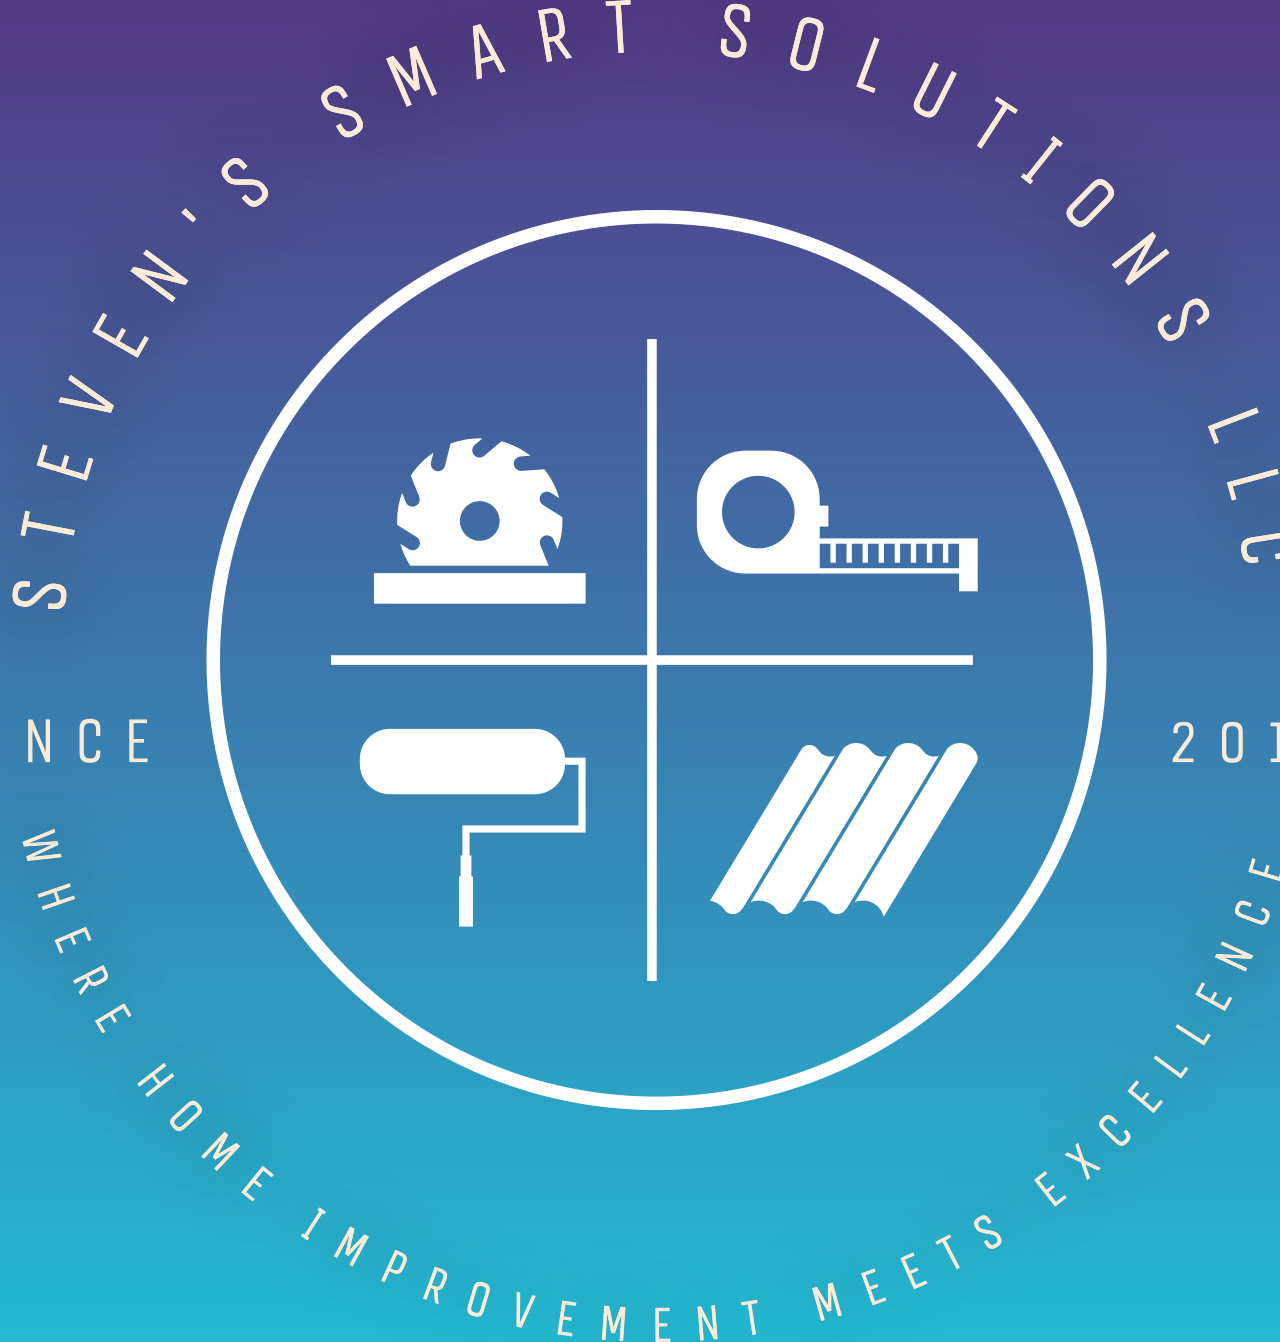 STEVEN'S SMART SOLUTIONS LLC 's logo